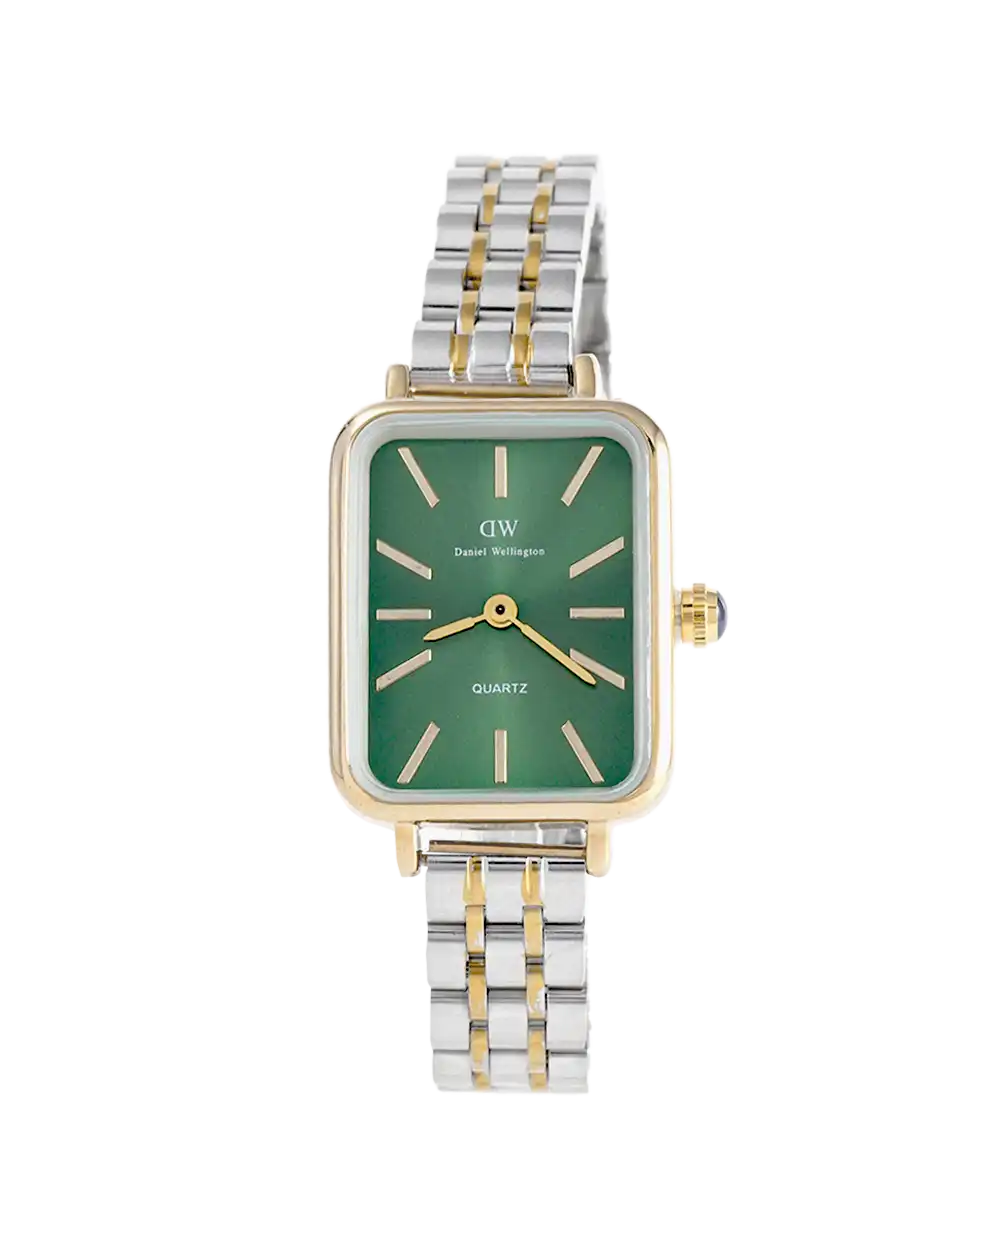 خرید ساعت مچی زنانه DW مدل 1658 daniel wellington صفحه سبز با بهترین قیمت به همراه ارسال رایگان و جعبه ی مخصوص کادویی | ساعت زنانه